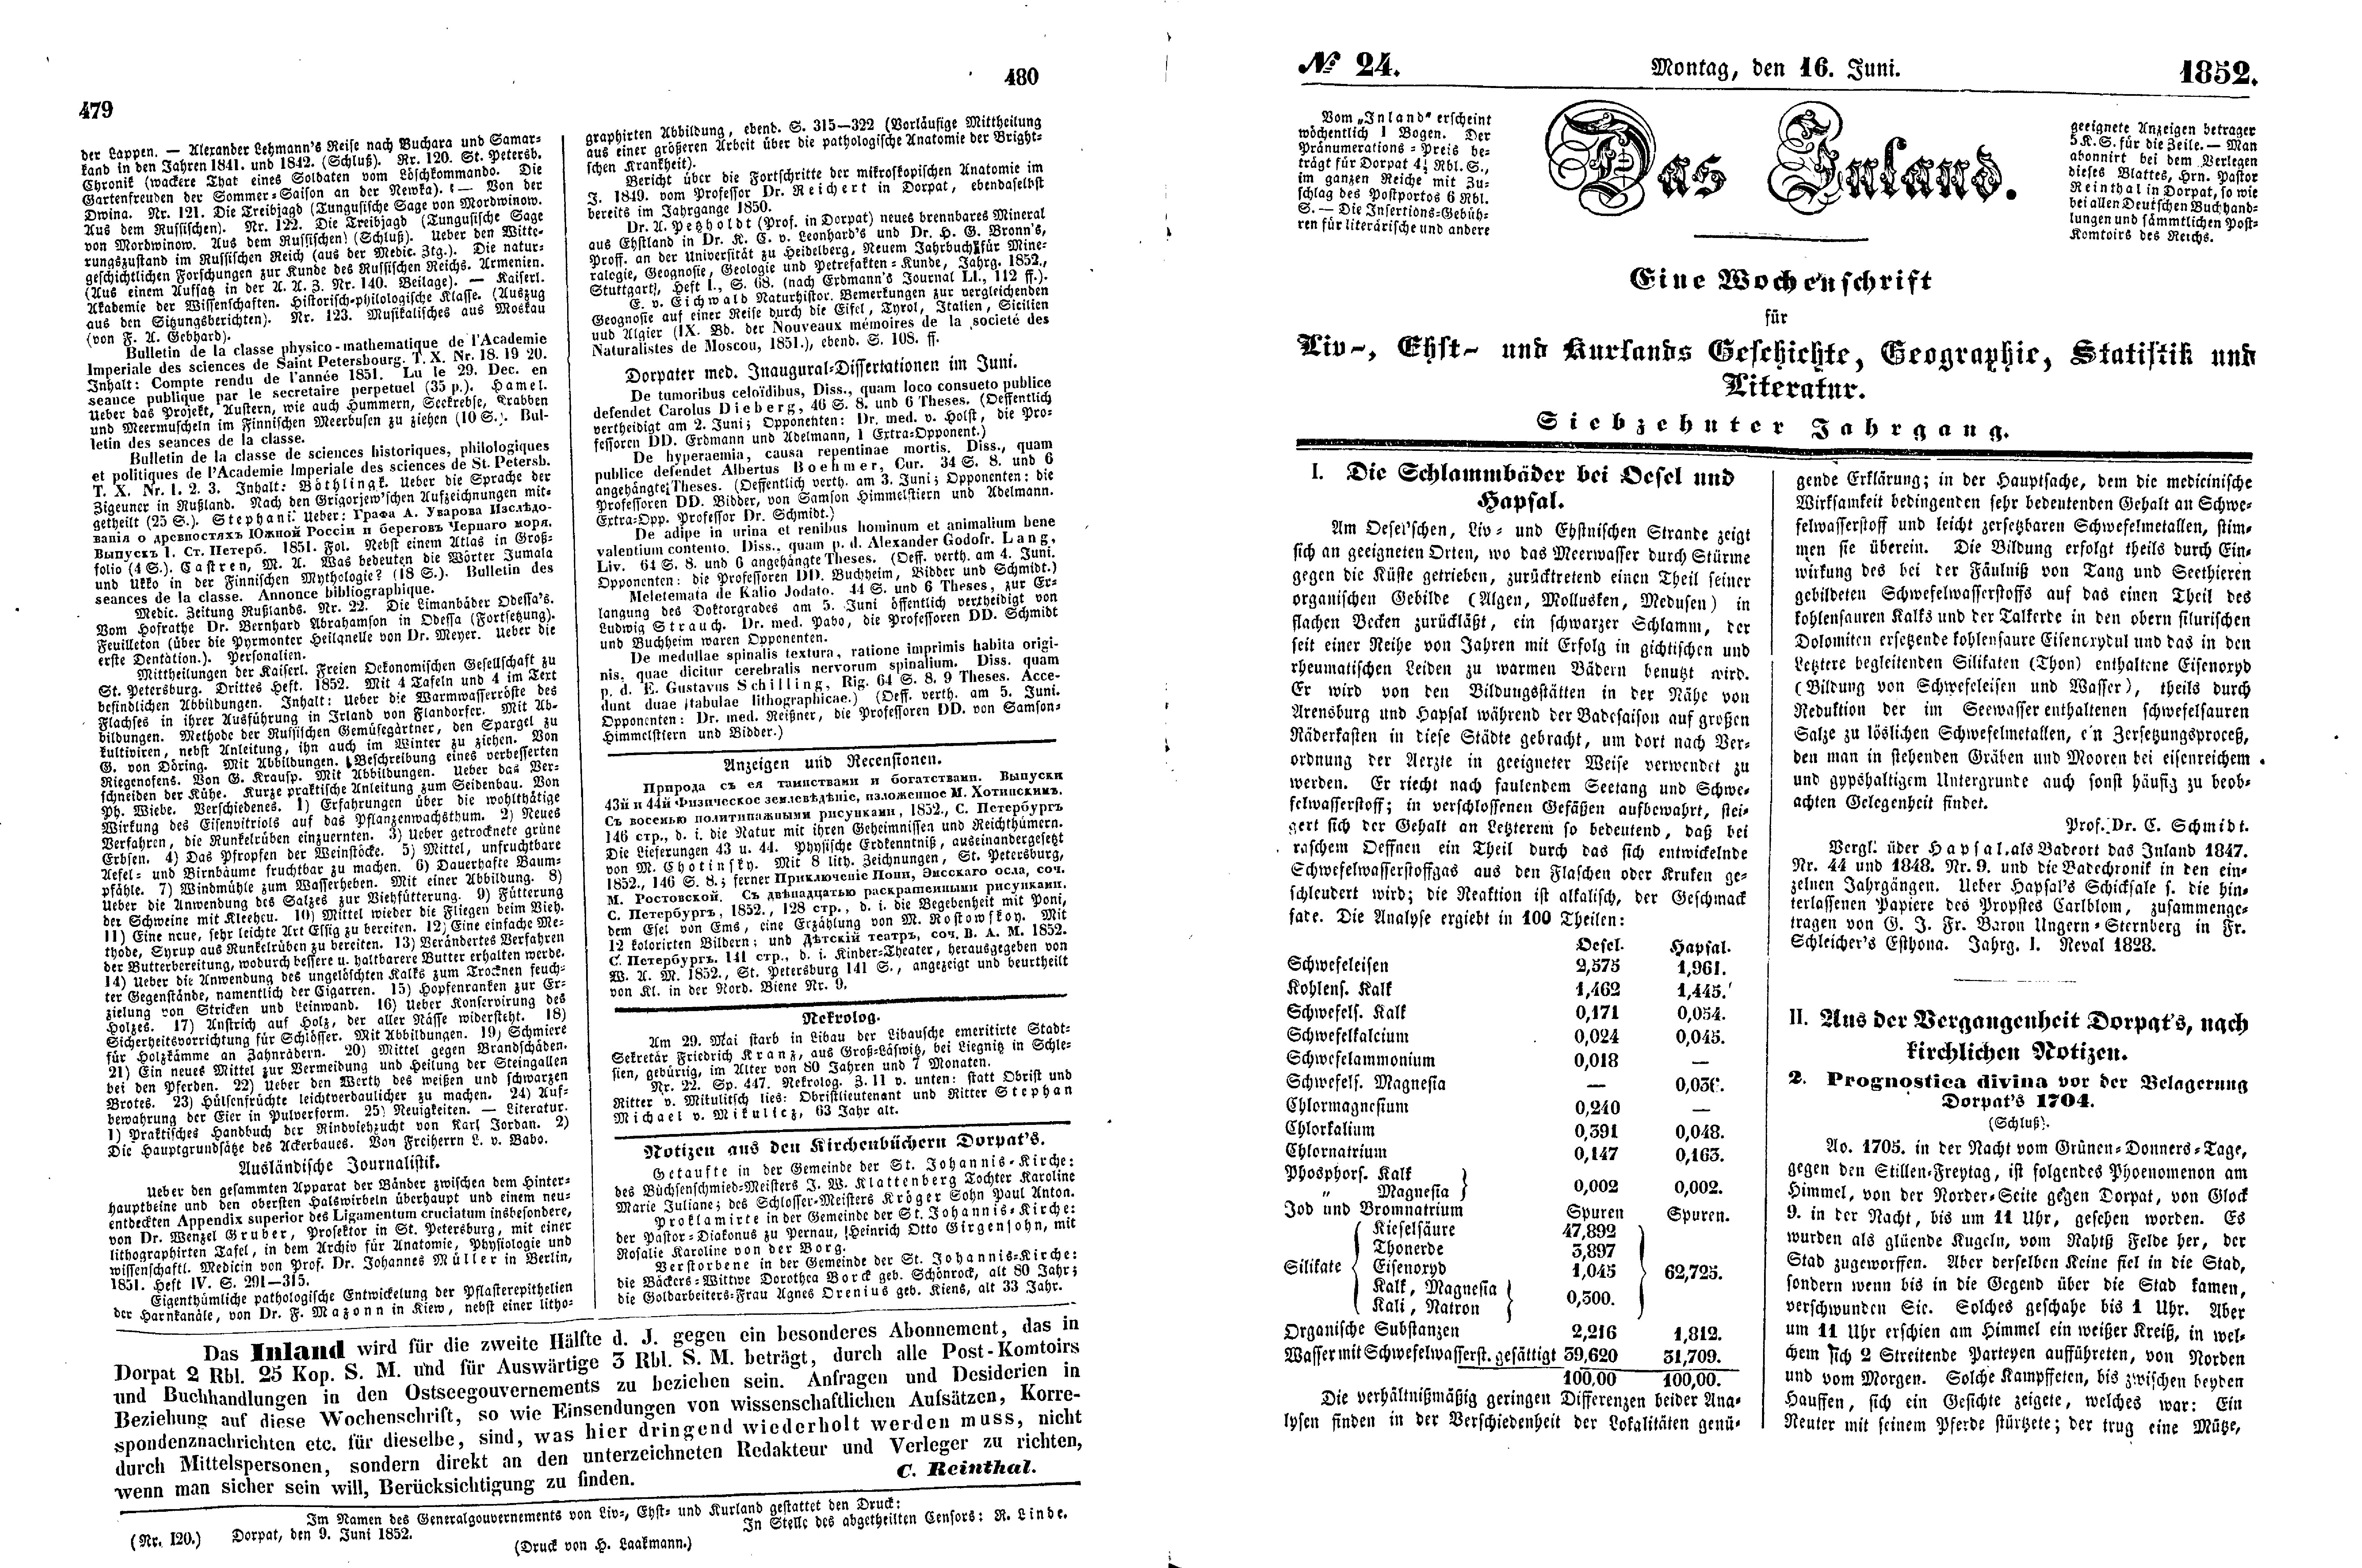 Prognostica divina vor der Belagerung Dorpat's 1704 [2] (Aus der Vergangenheit Dorpat's, nach kirchlichen Notizen) (1852) | 1. (479-482) Основной текст